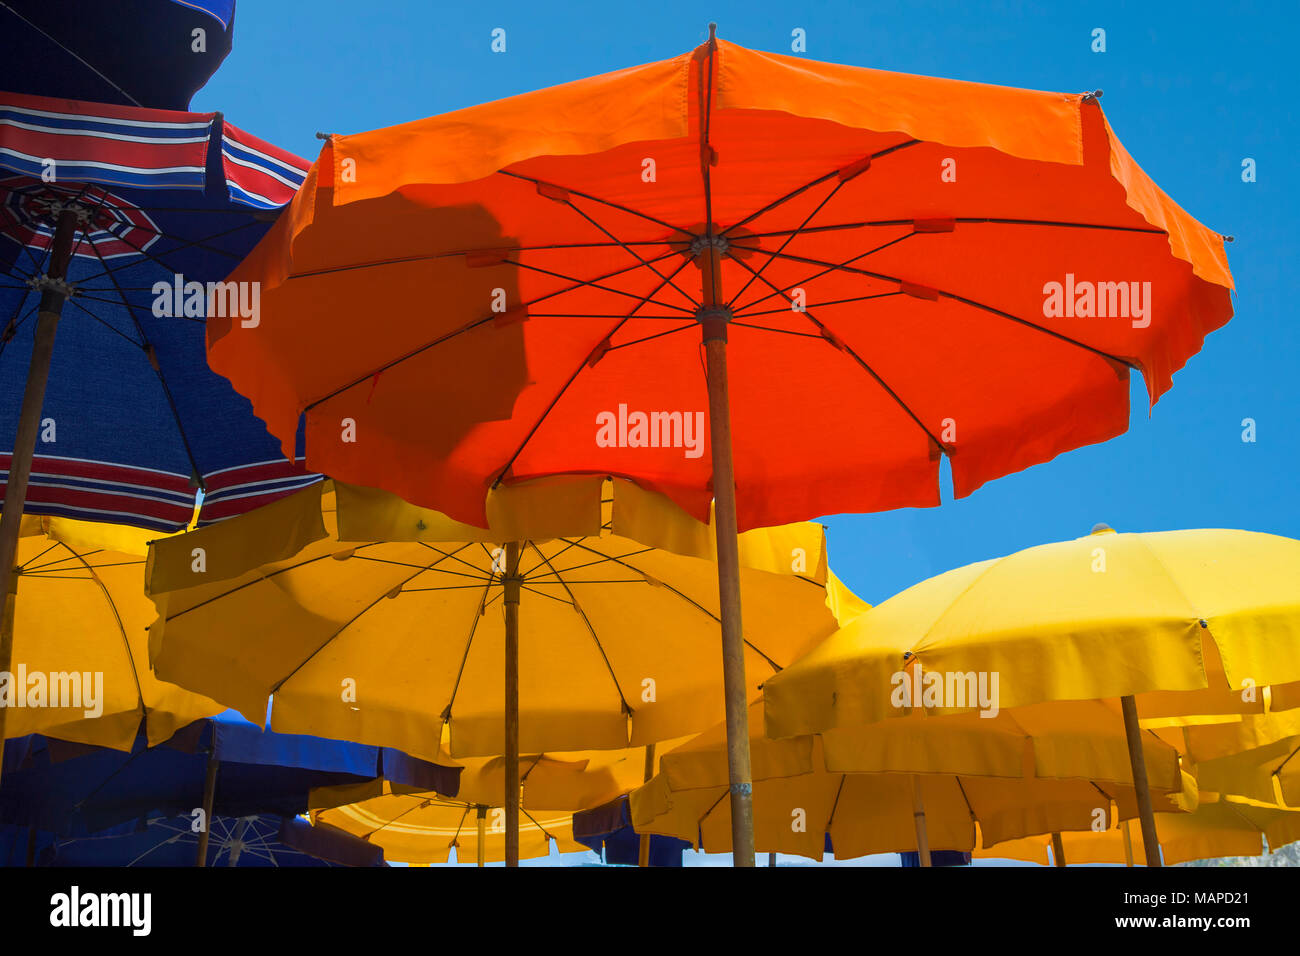 Les parasols colorés sur le harborside sur la Piazza Marconi, Vernazza, ligurie, italie Banque D'Images